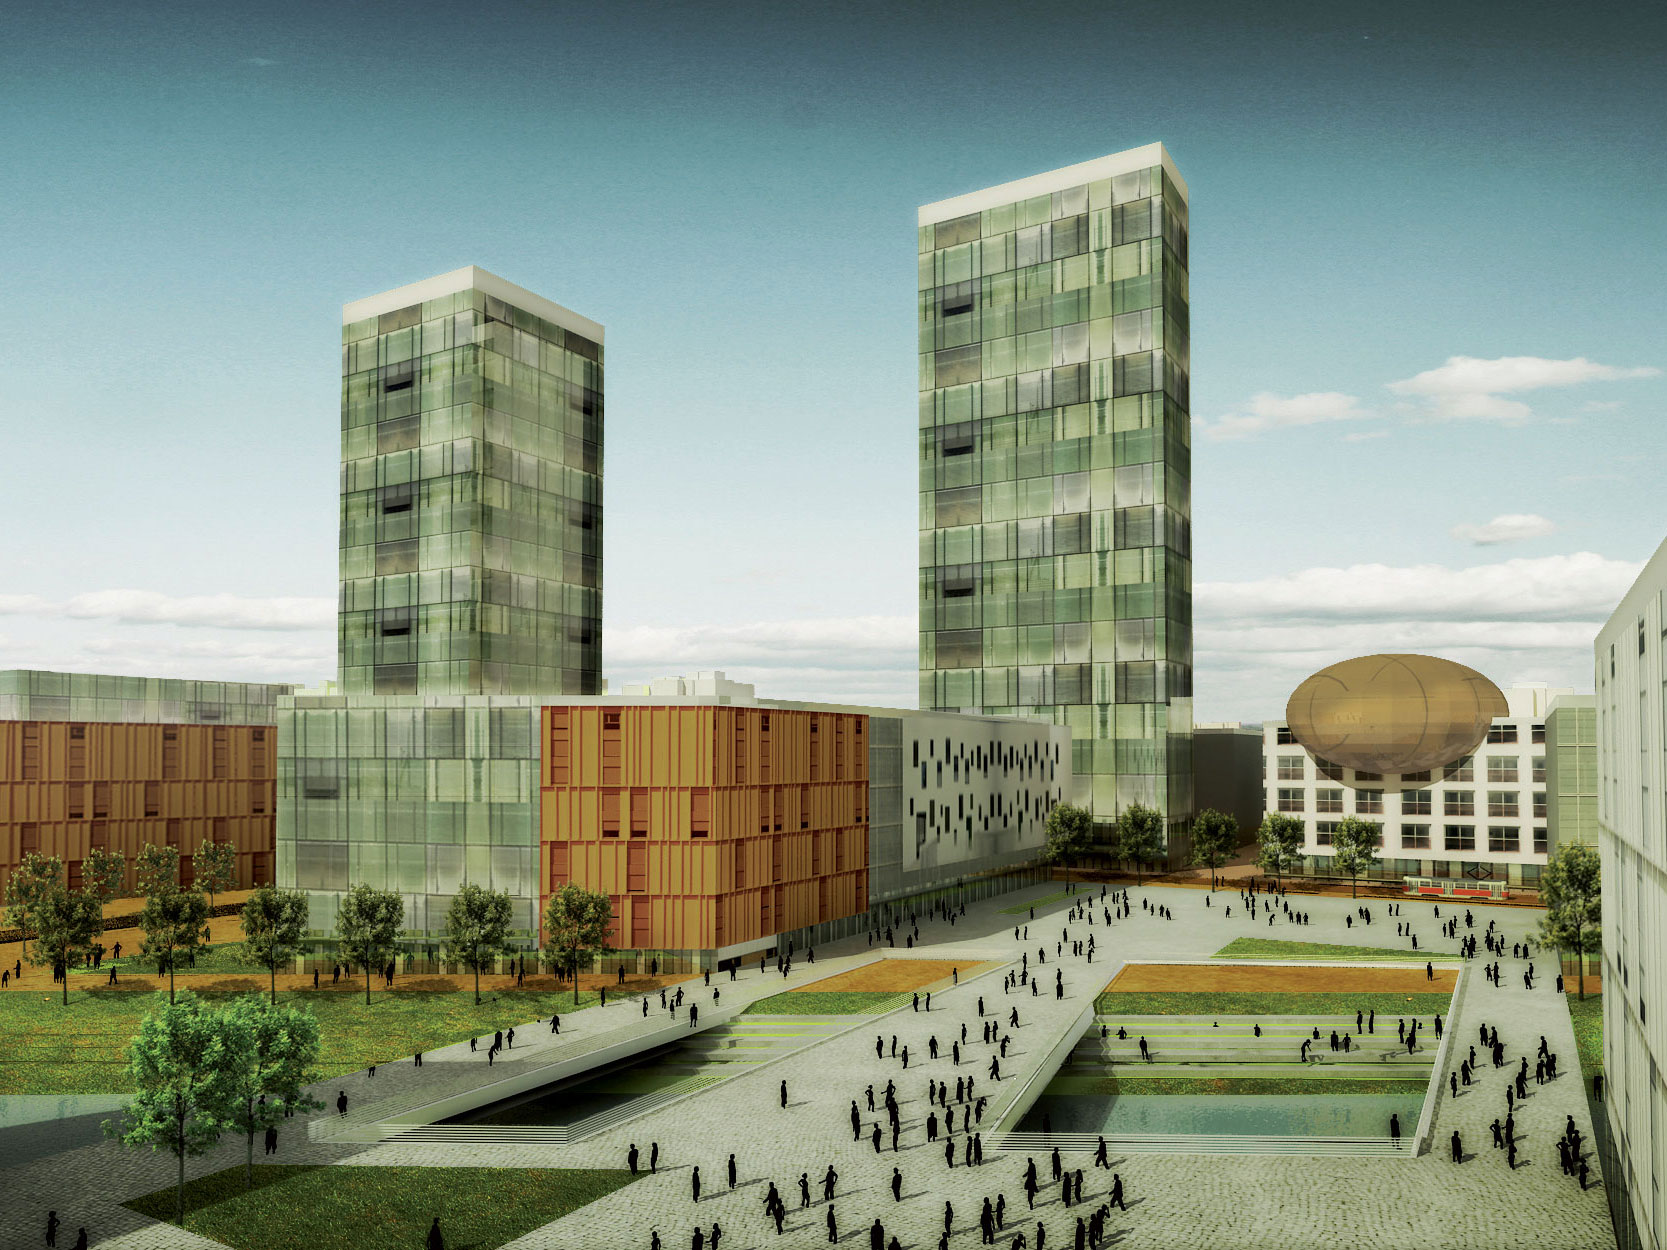 V súťaži Riešenie centrálnej rozvojovej osi Petržalky získali Architekti Šebo Lichý 3. miesto